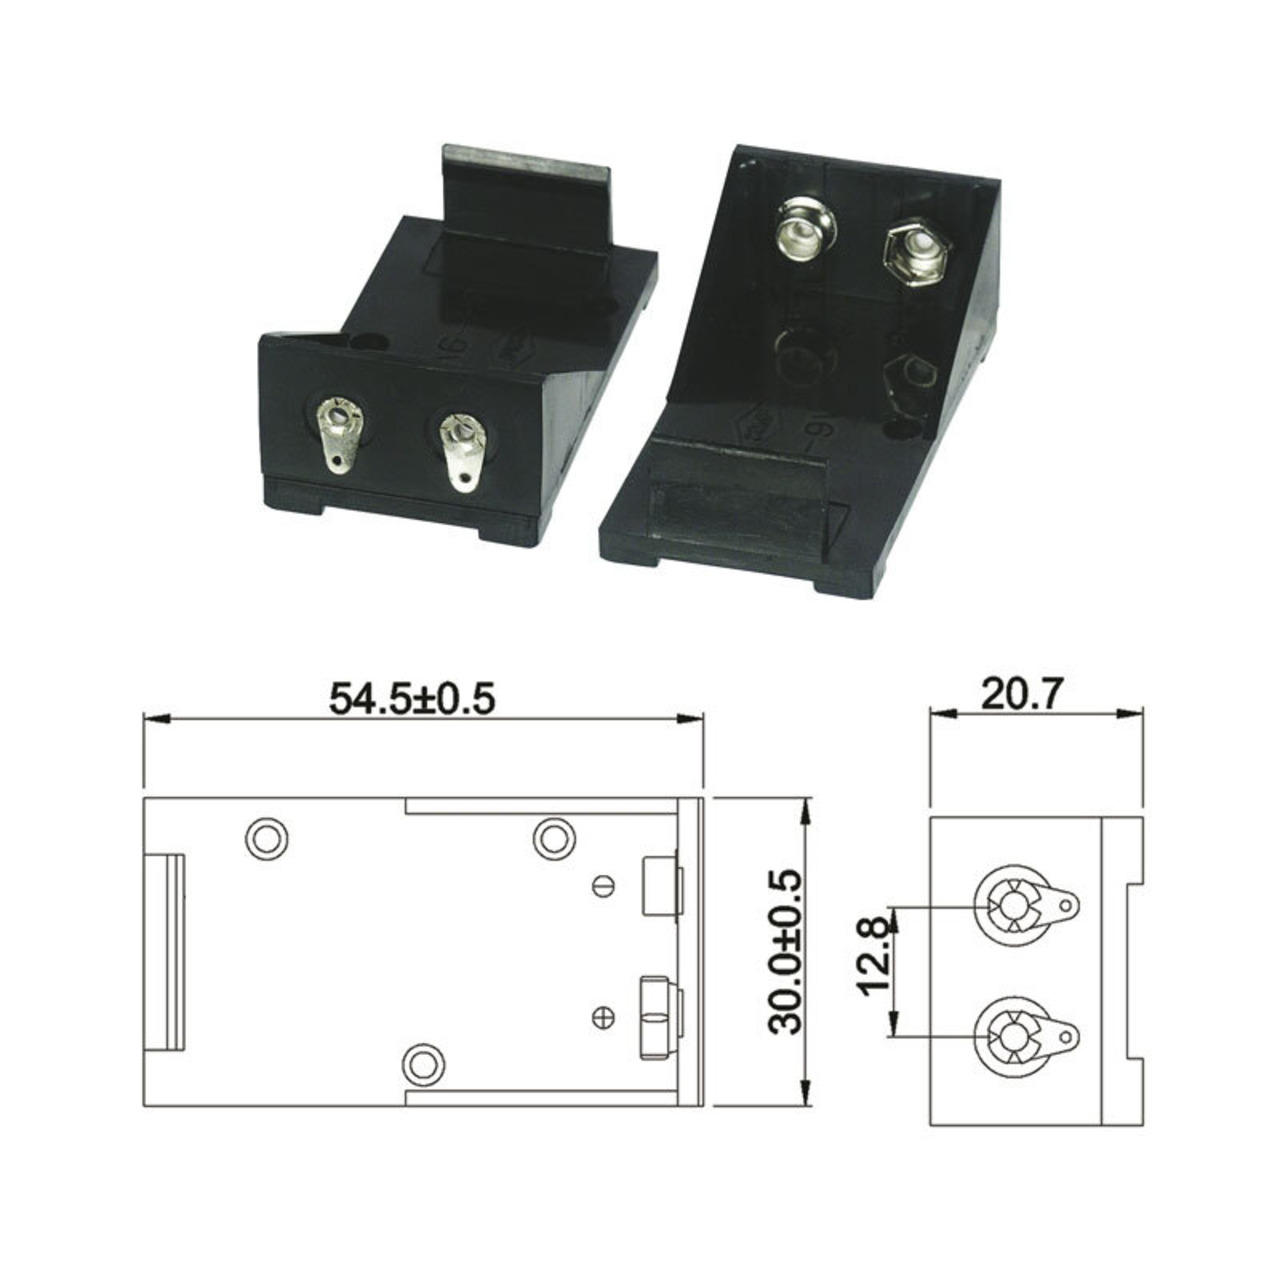 Batteriehalter für 1 x 9-V-Block mit Lötanschluss unter Stromversorgung